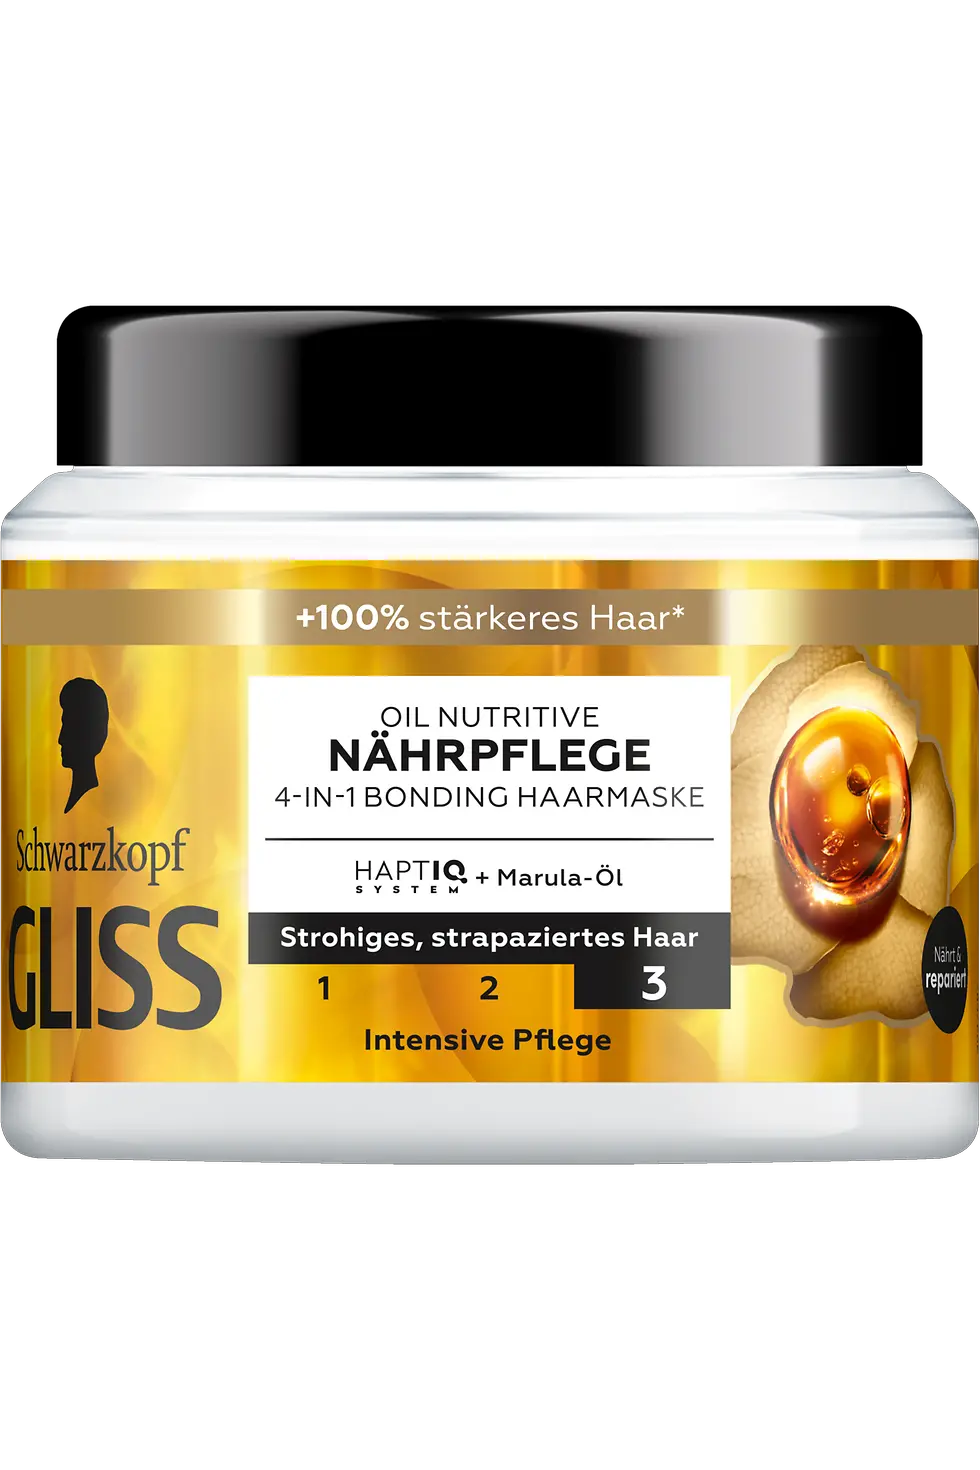 
Gliss Oil Nutritive Nährpflege 4-in-1 Bonding Haarmaske